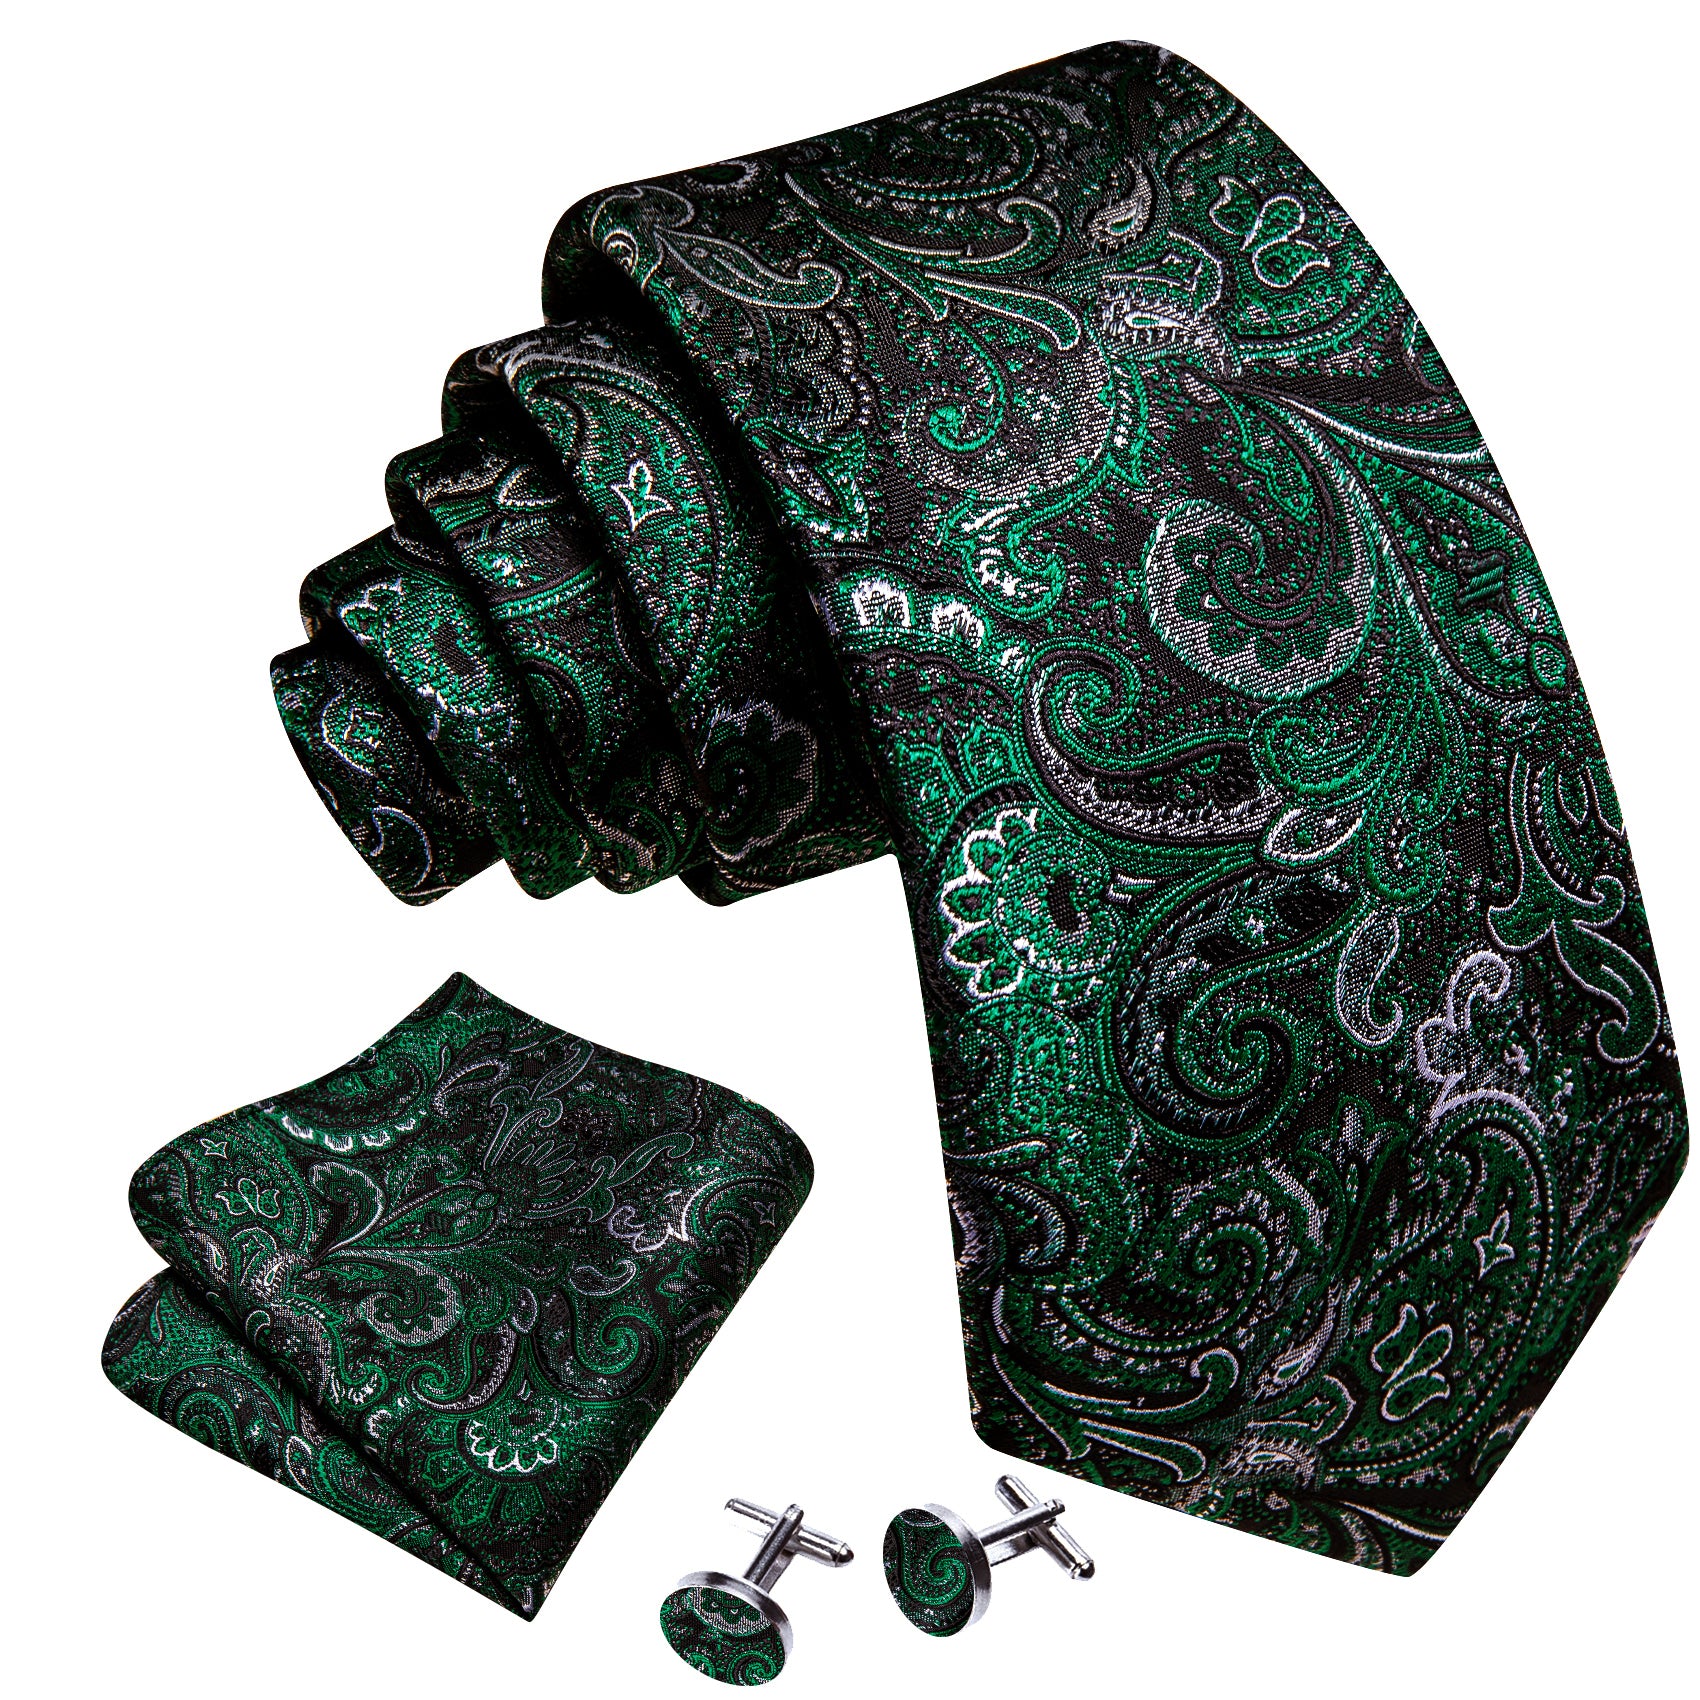 Dark Green Sliver Paisley Necktie